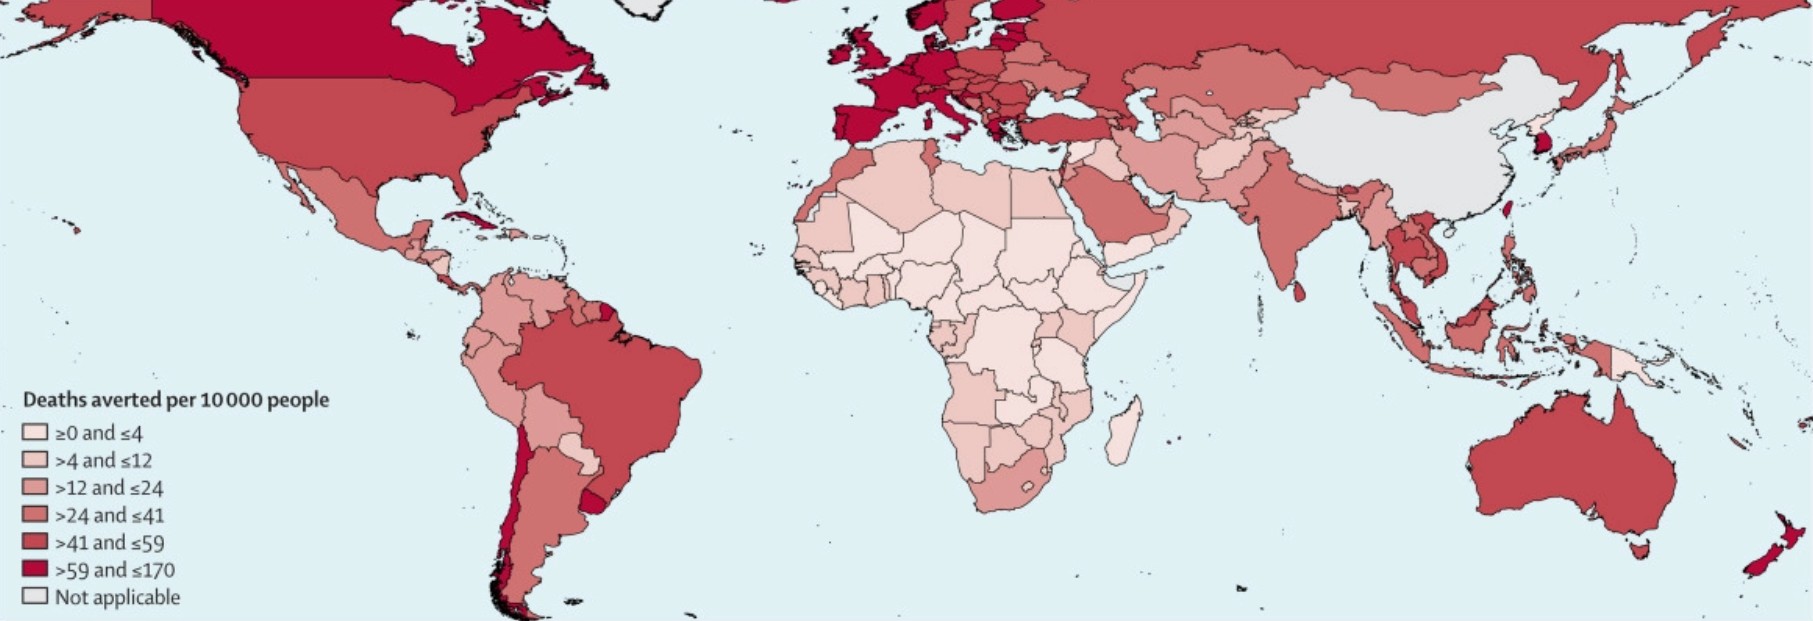 Mapa com mortes evitadas a cada 10.000 pessoas ao redor do mundo  (Foto: The Lancet)